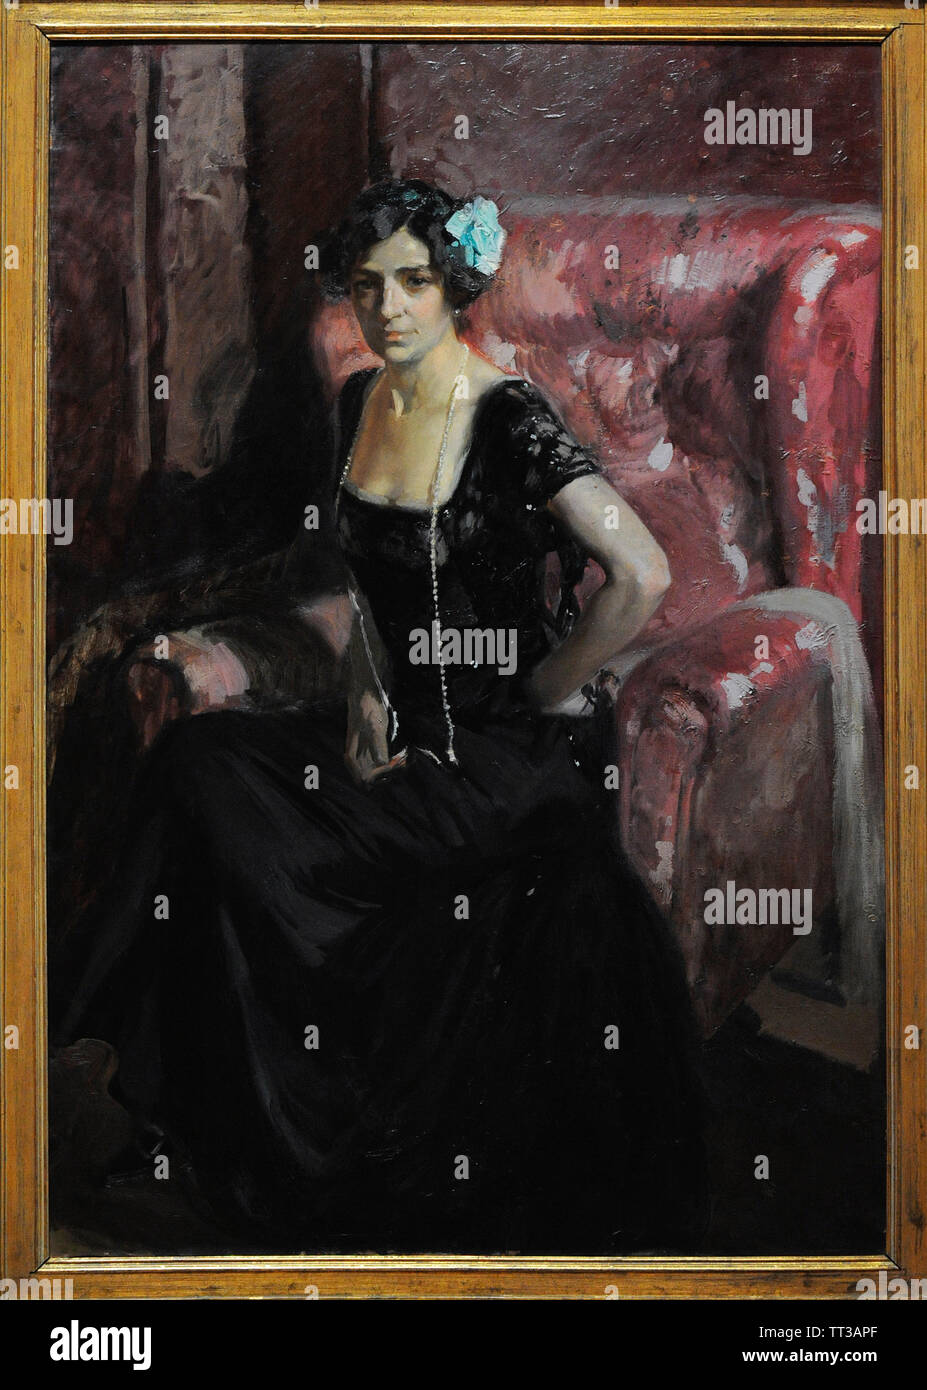 Joaquin Sorolla y Bastida (1863-1923). Peintre espagnol. Clotilde en tenue de soirée, 1910. Musée Sorolla. Madrid. L'Espagne. Banque D'Images